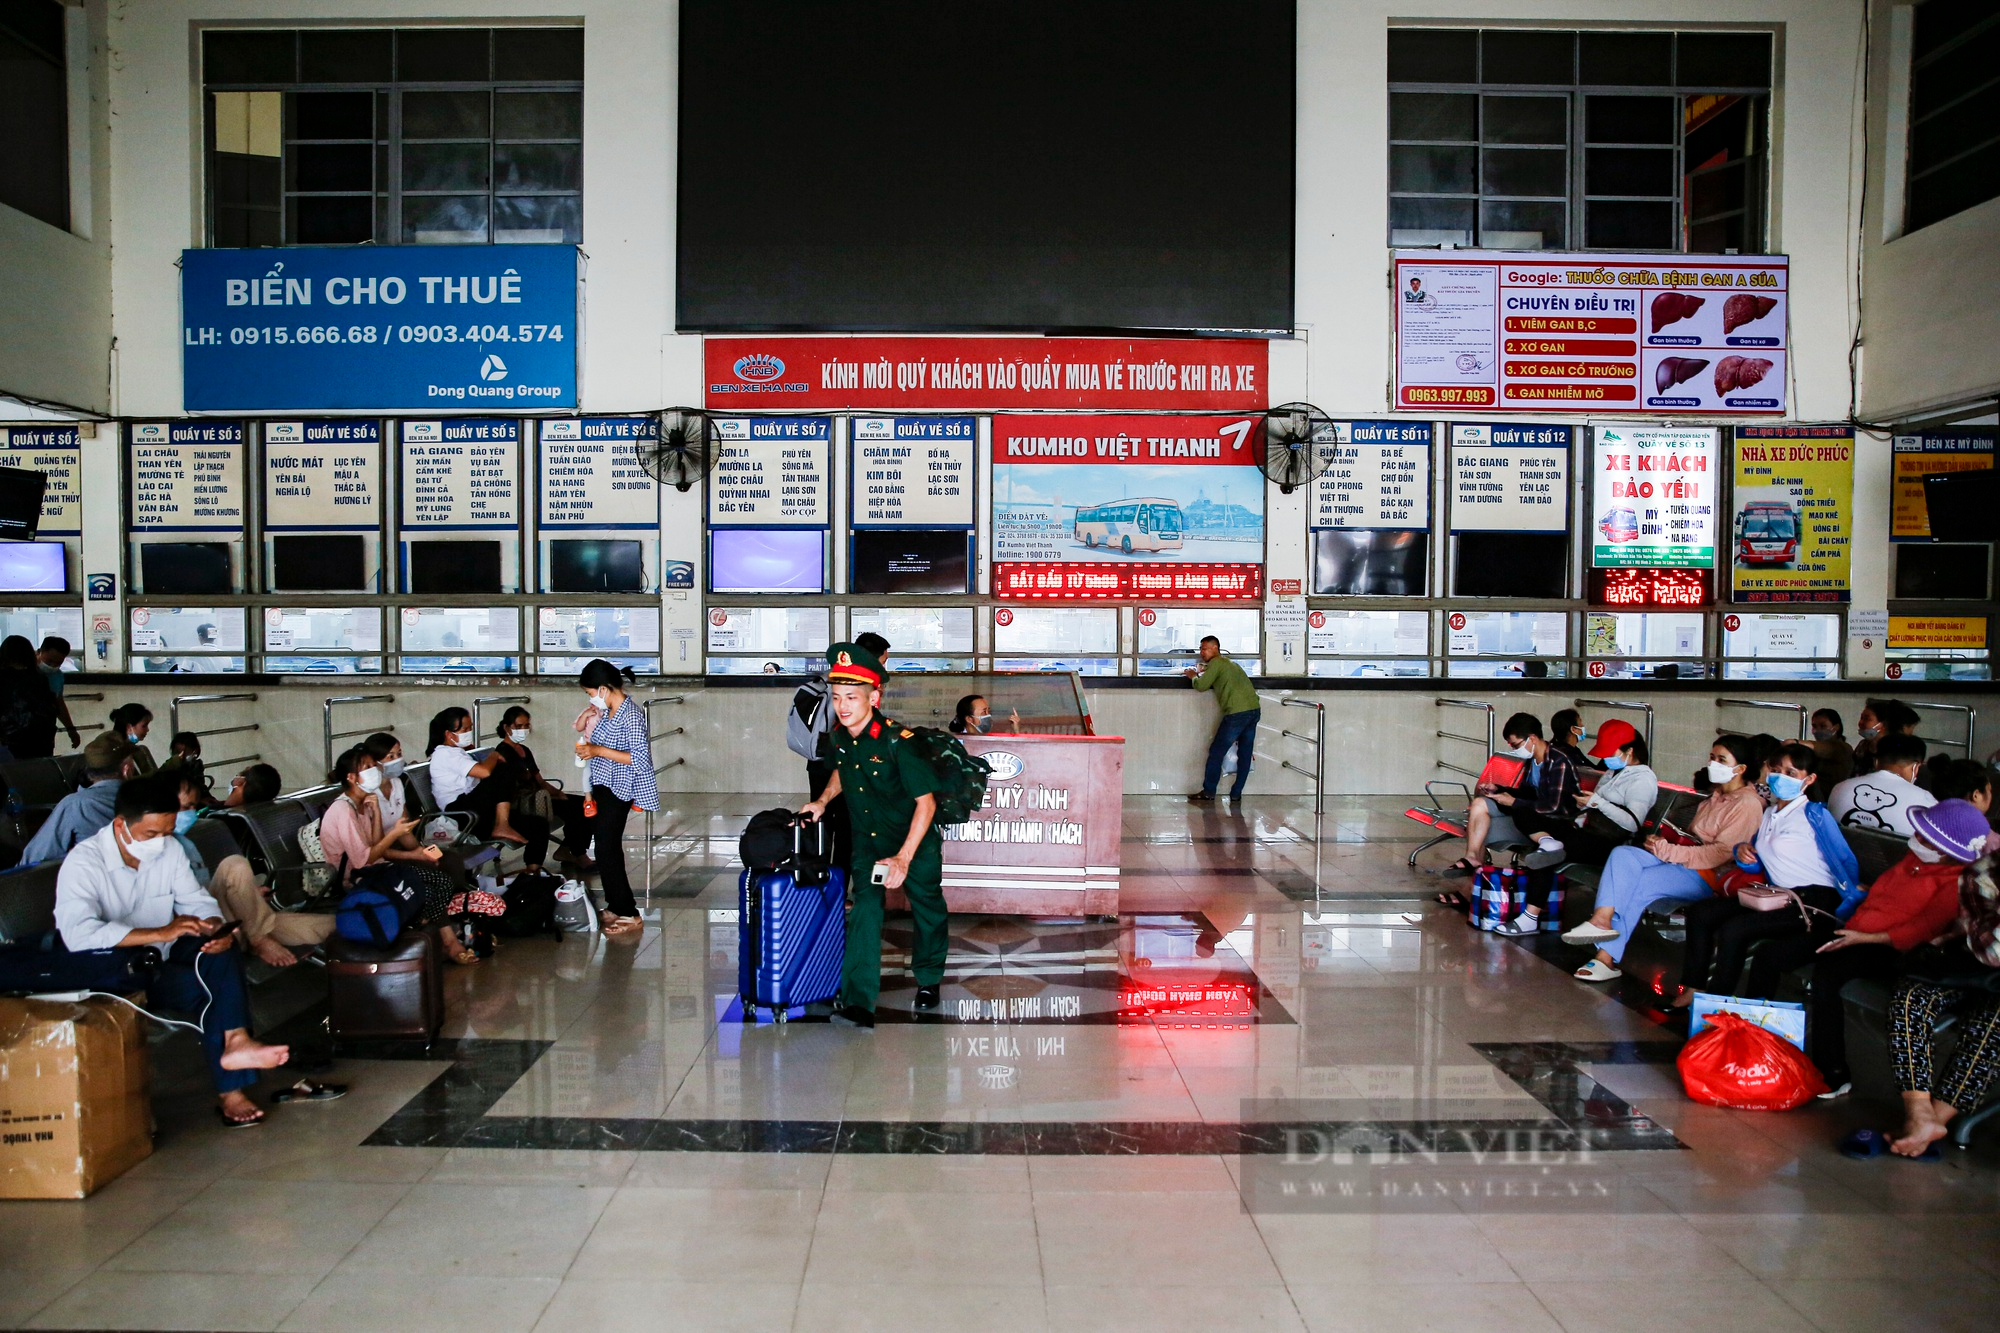 Bến xe tại Hà Nội đông nghịt, TTGT thắt chặt kiểm tra xe khách dịp nghỉ lễ Quốc khánh 2/9 - Ảnh 1.